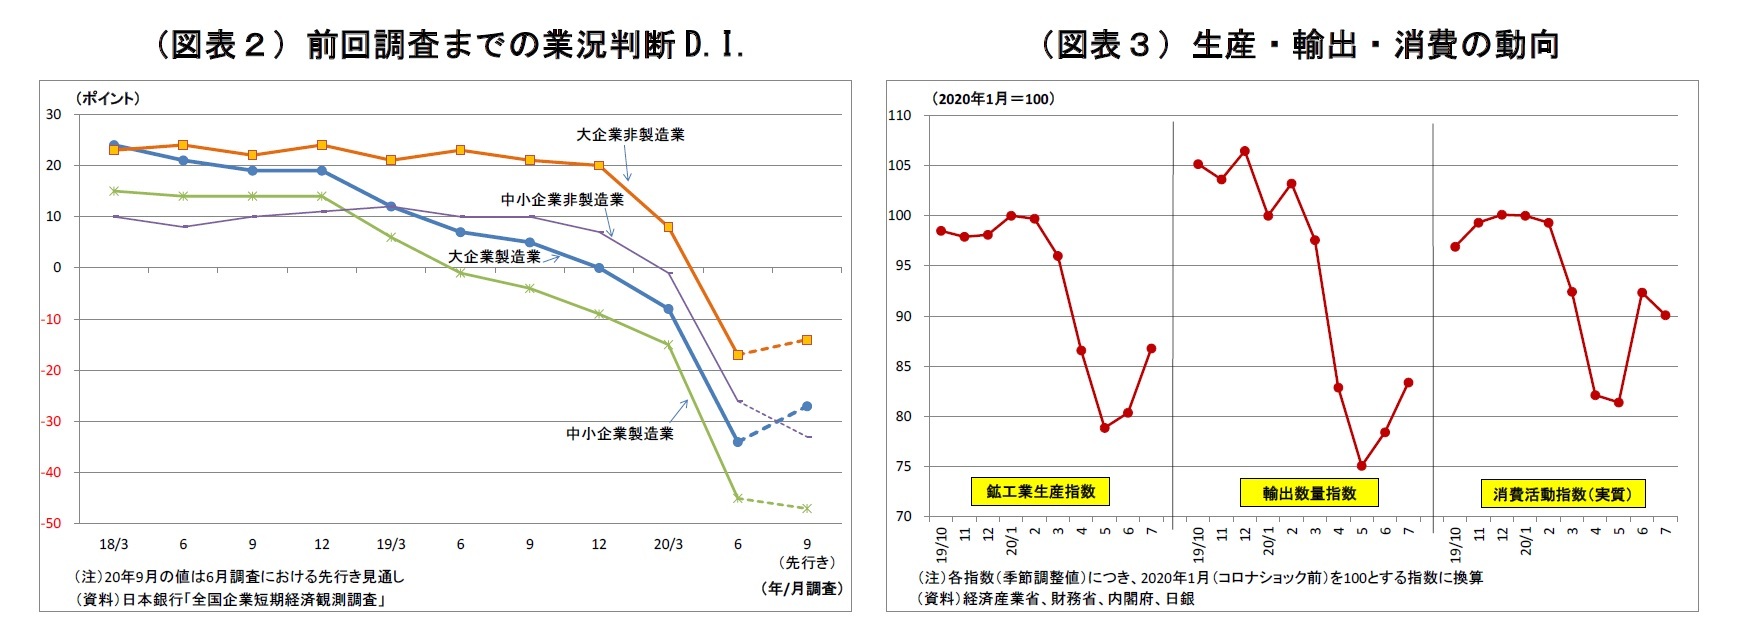 （図表２）前回調査までの業況判断D.I./（図表３）生産・輸出・消費の動向